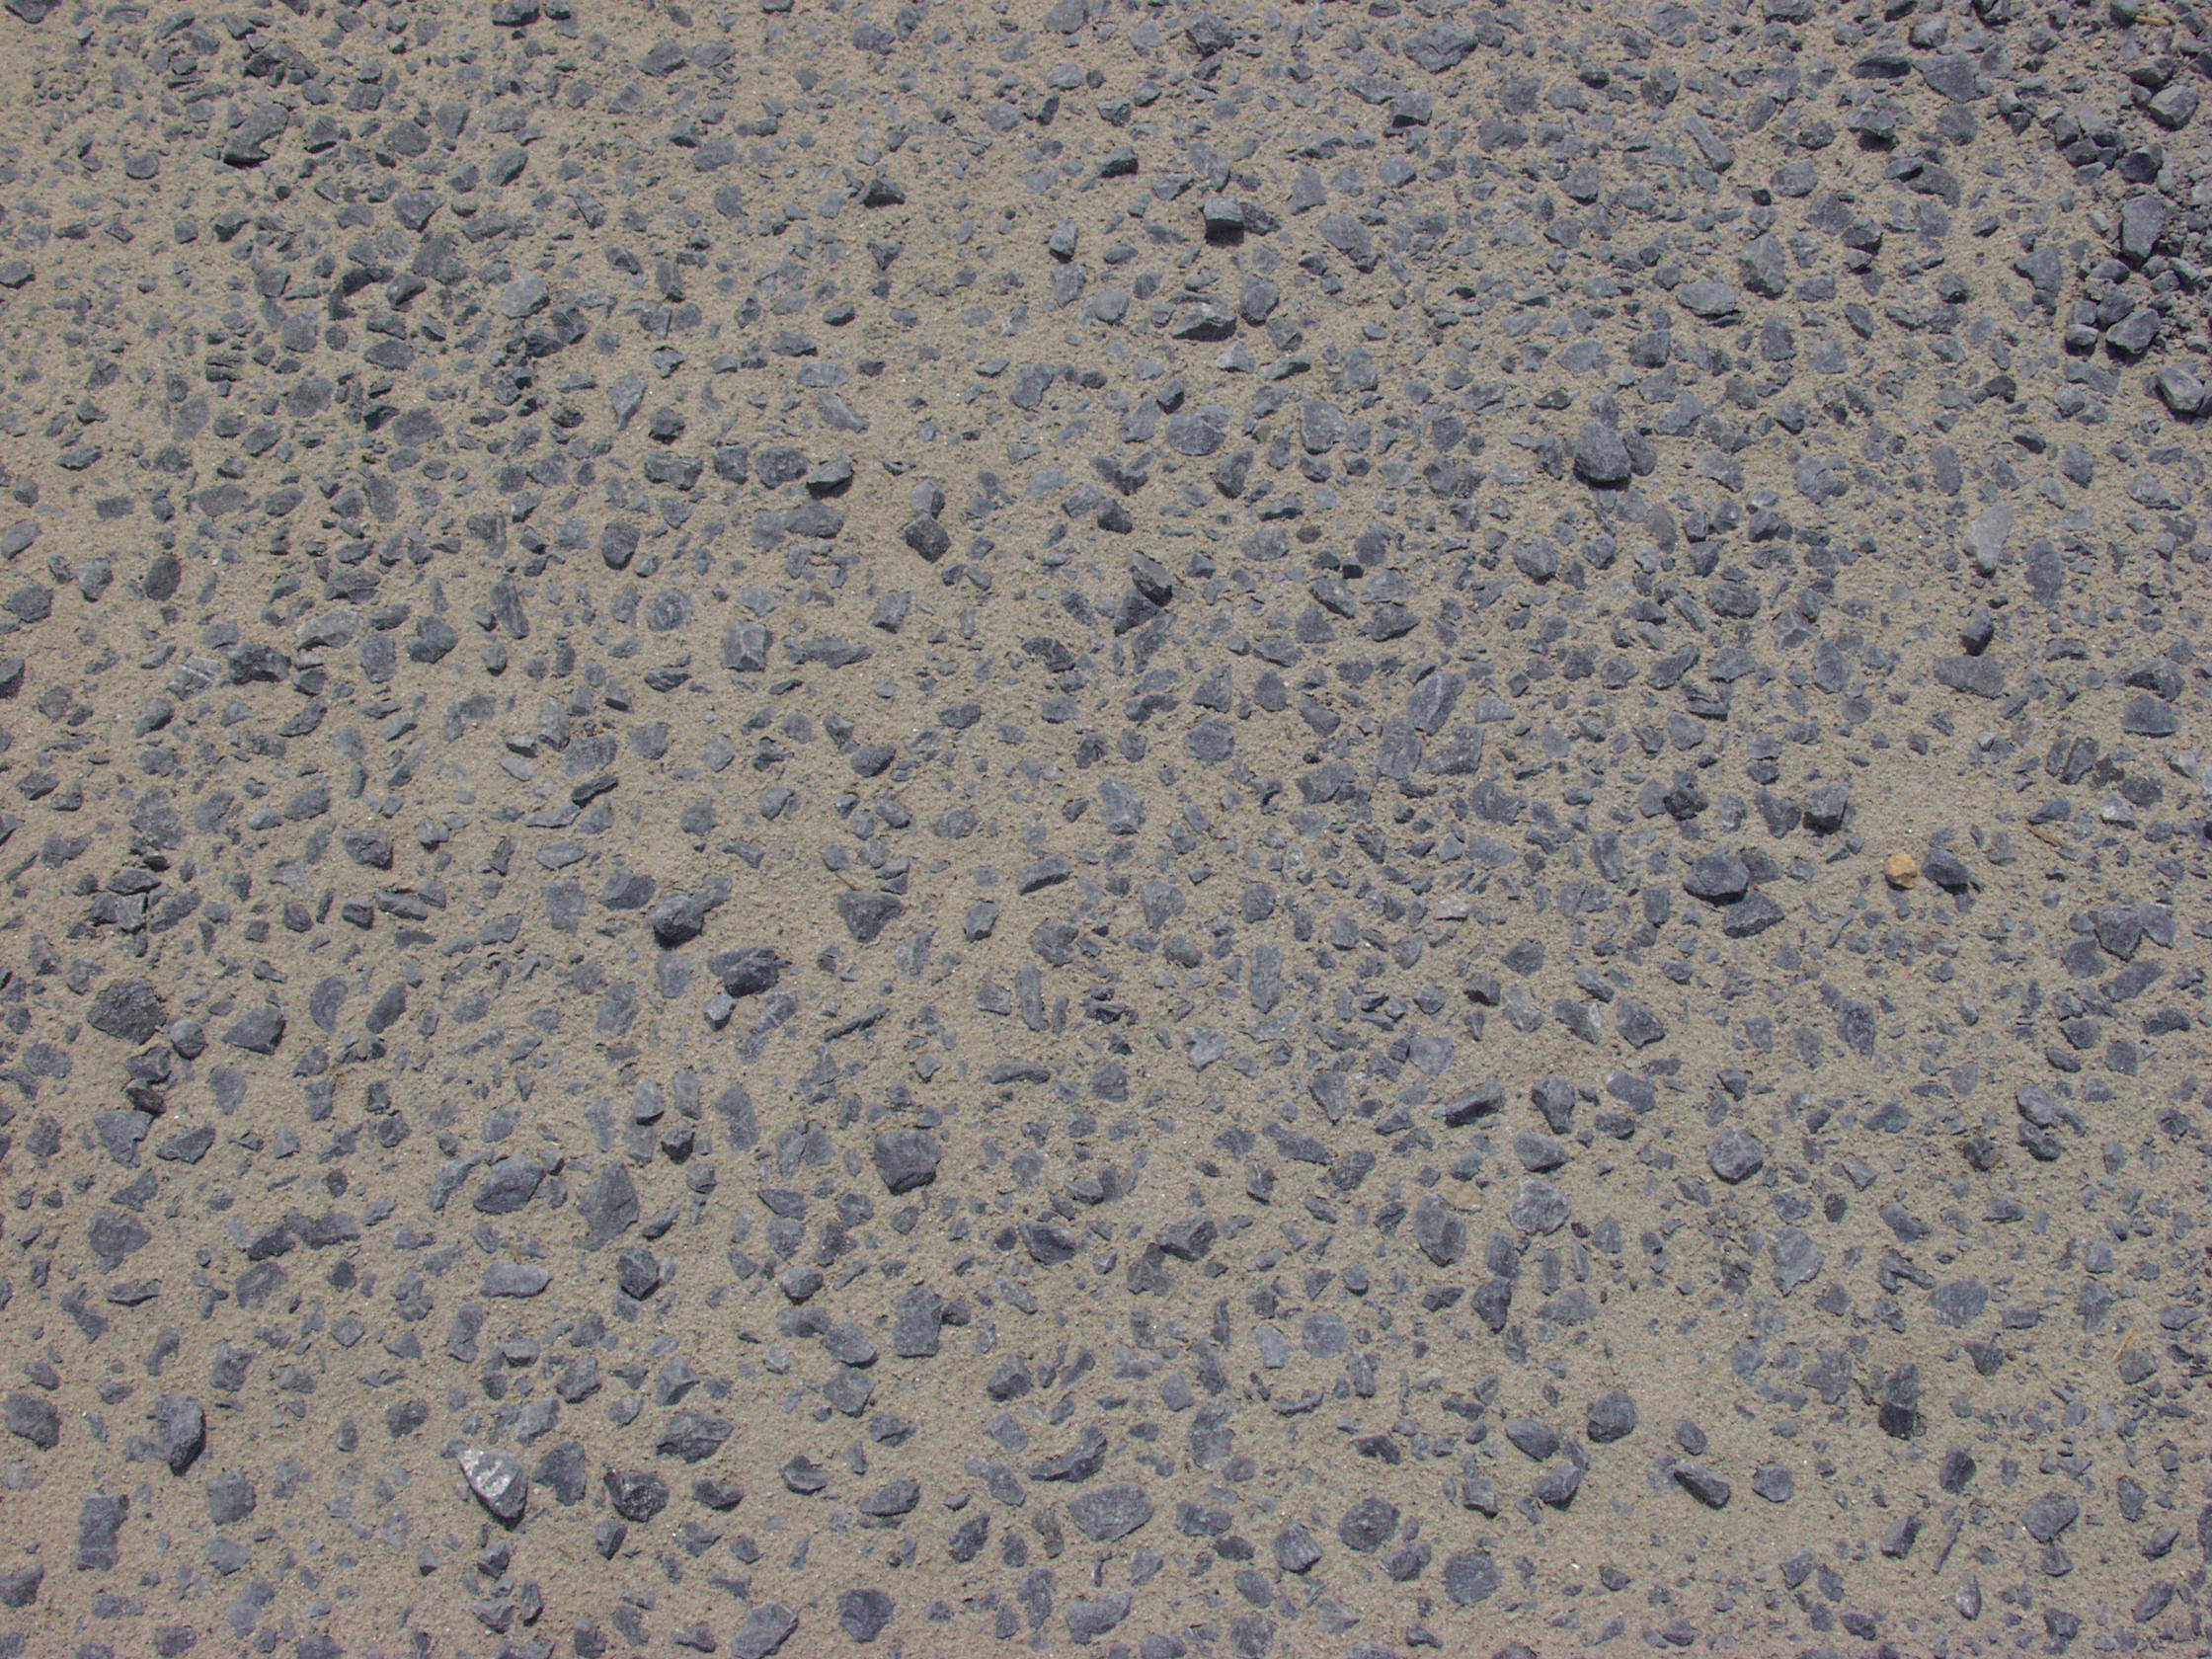 本作品主题是沙地带鹅卵石免费3d材质贴图,id是22979,该图片尺寸为